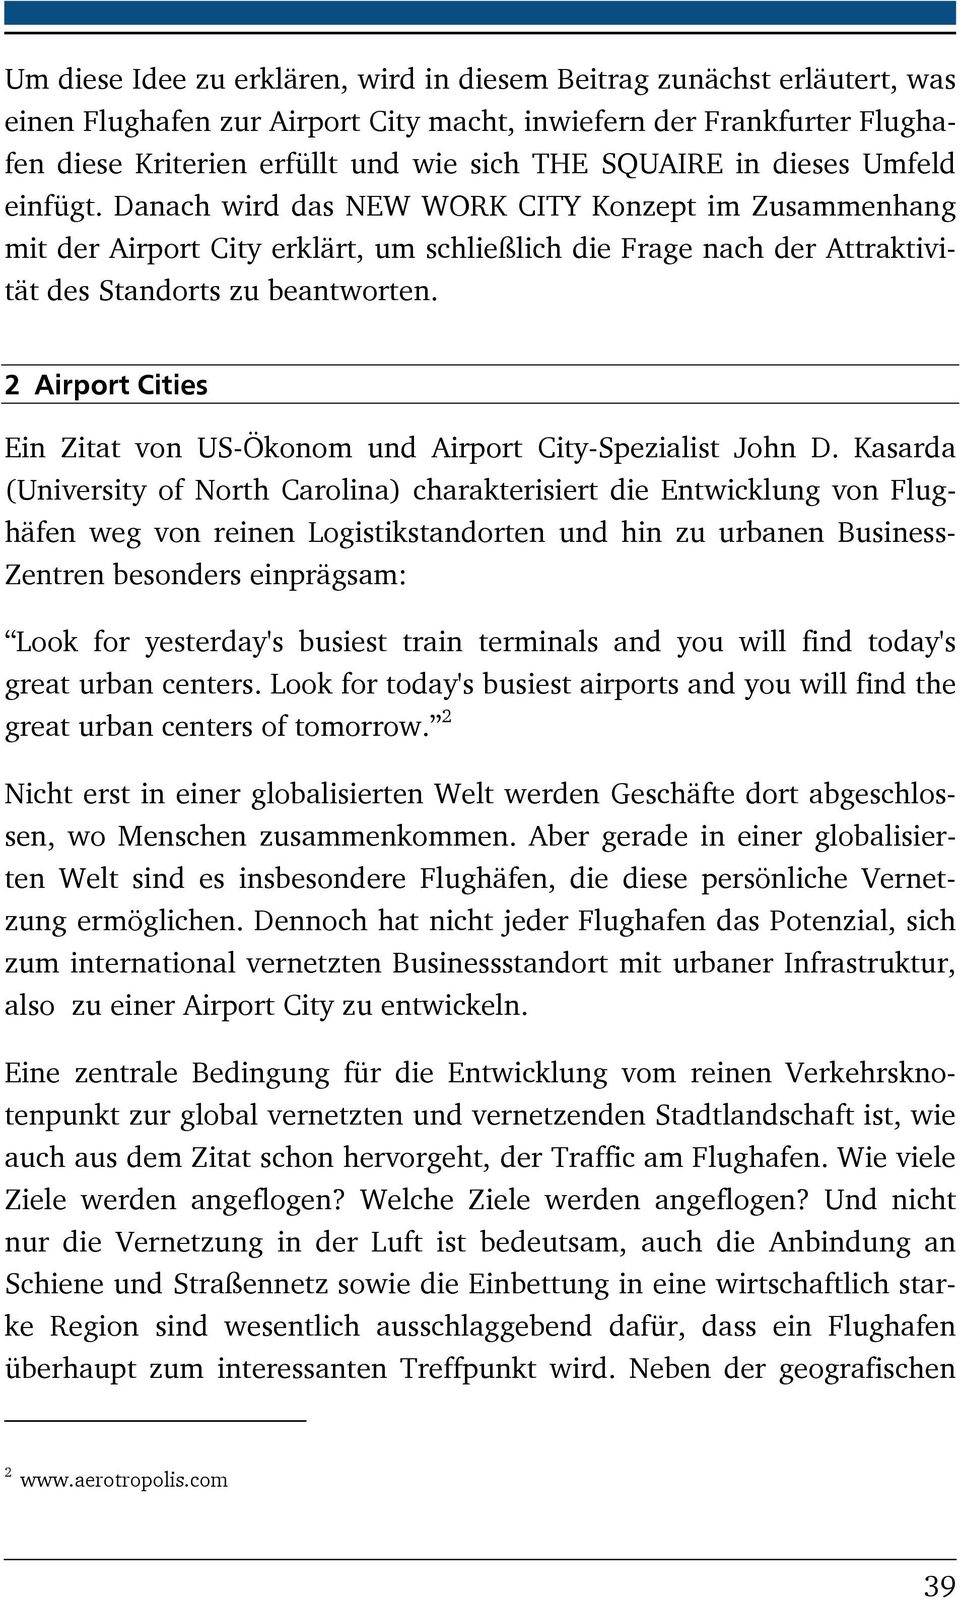 2 Airport Cities Ein Zitat von US-Ökonom und Airport City-Spezialist John D.